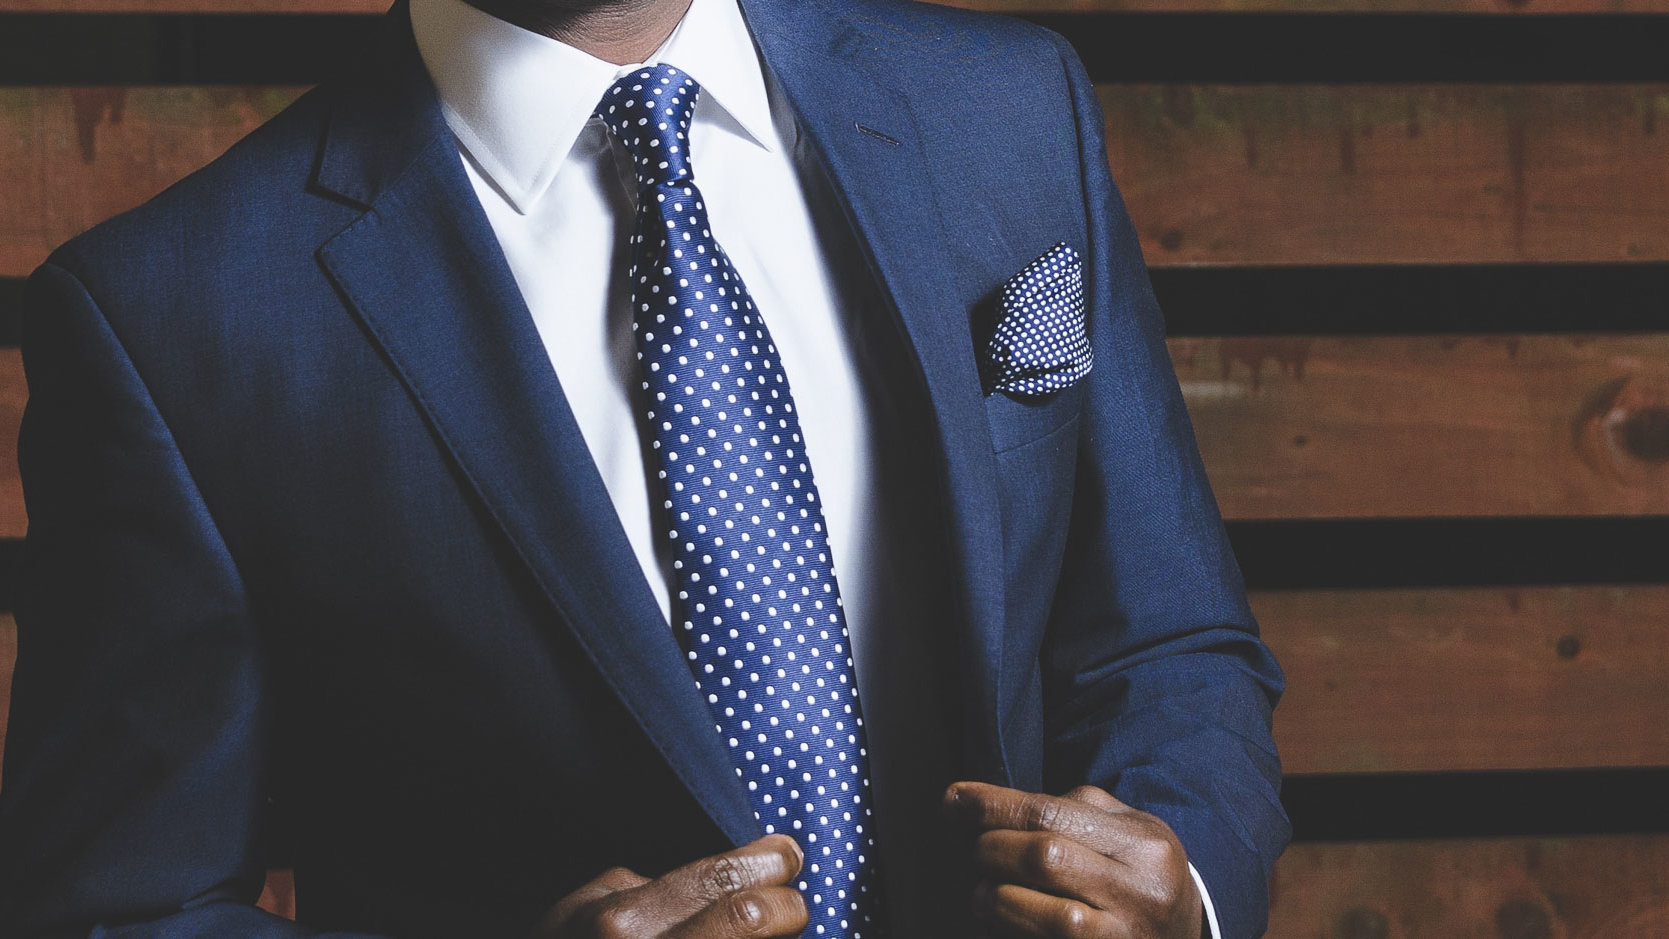 Tagungshotels und Tagungen in Nürnberg - schwarzer Mann im blauen Anzug mit blau-gepunkteter Krawatte und blau-gepunktetem Einstecktuch